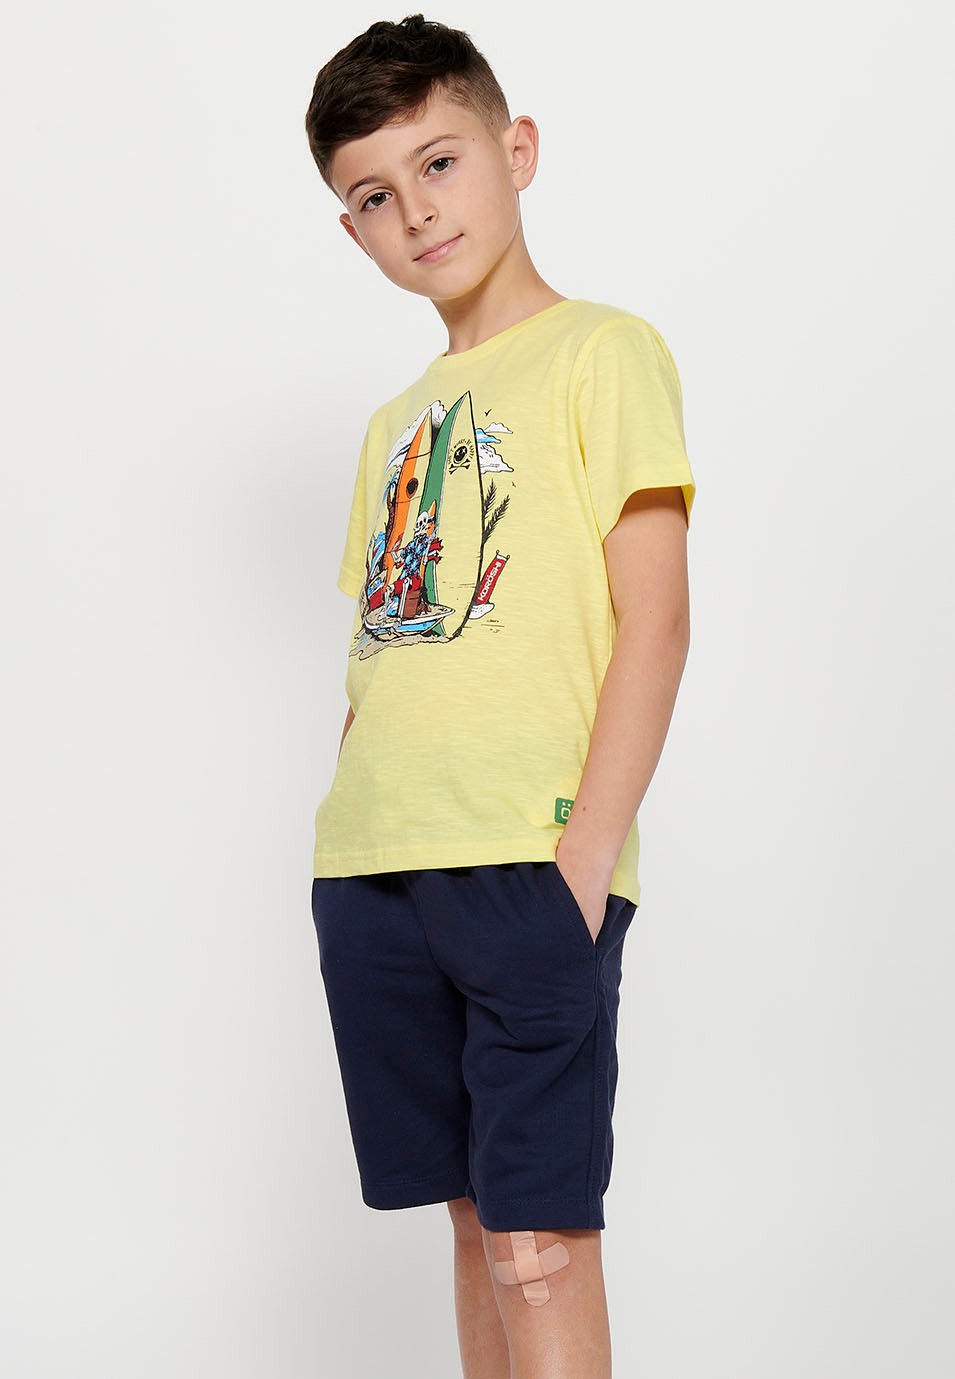 Camiseta de manga corta de Algodón y cuello redondo. Estampado delantero Color Amarillo para Niño